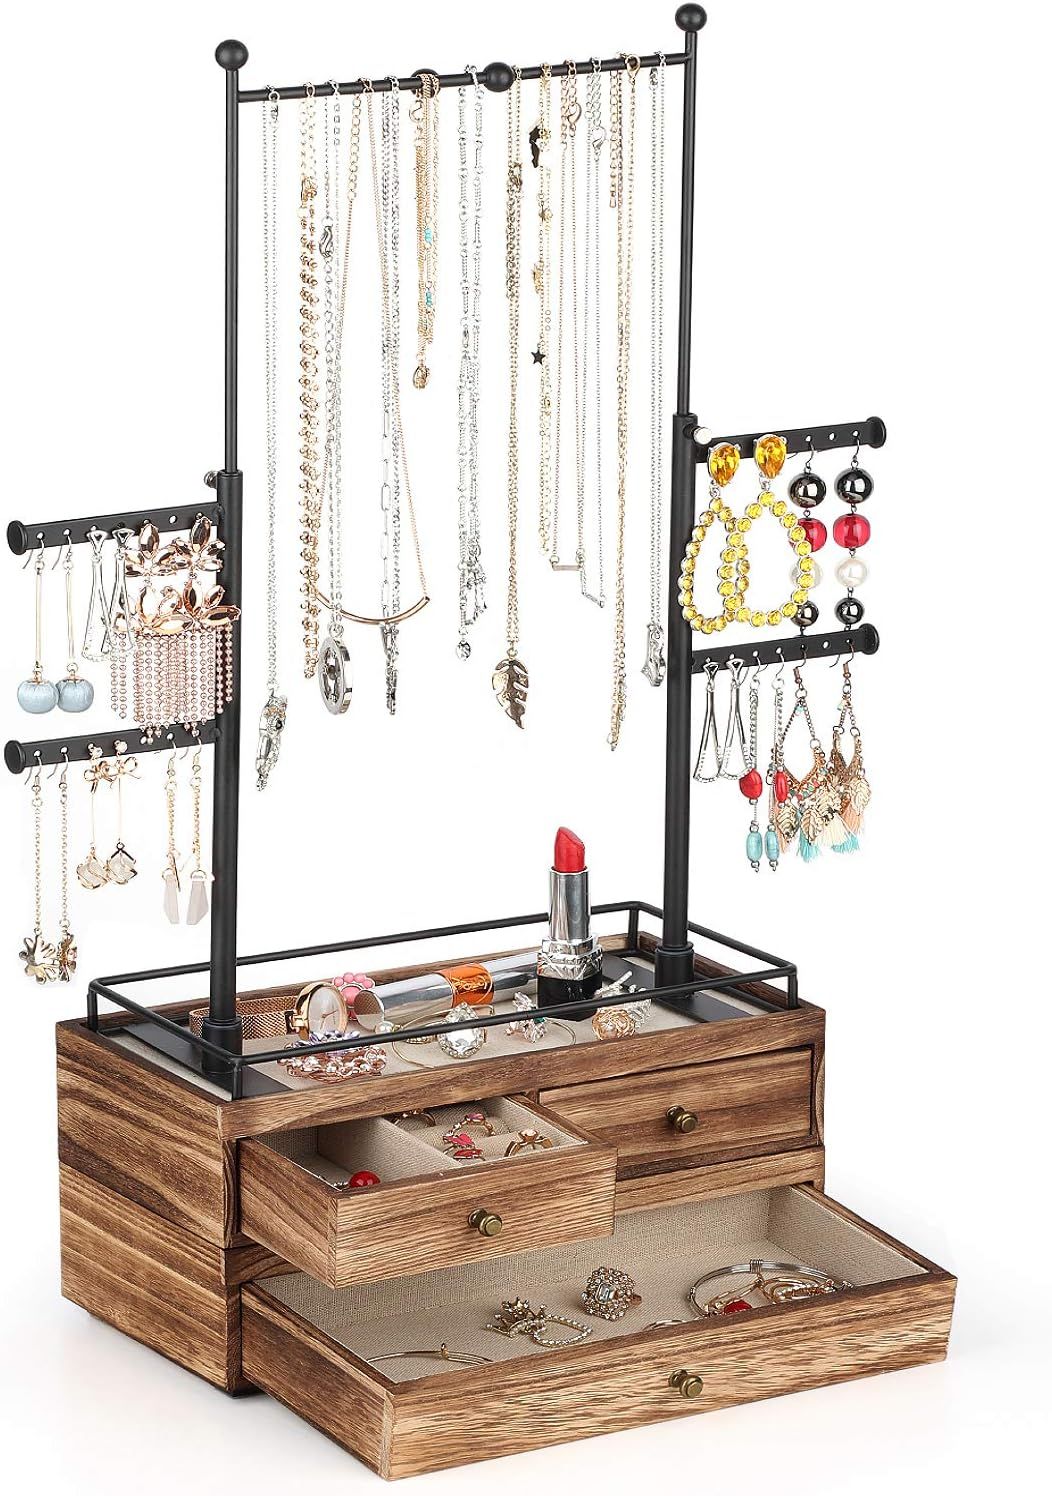 Jewelry Organizer - 2 Layer Wooden Jewelry Drawer Storage Box with 6 Tier Jewelry Tree Stand, Jewelr | Amazon (US)